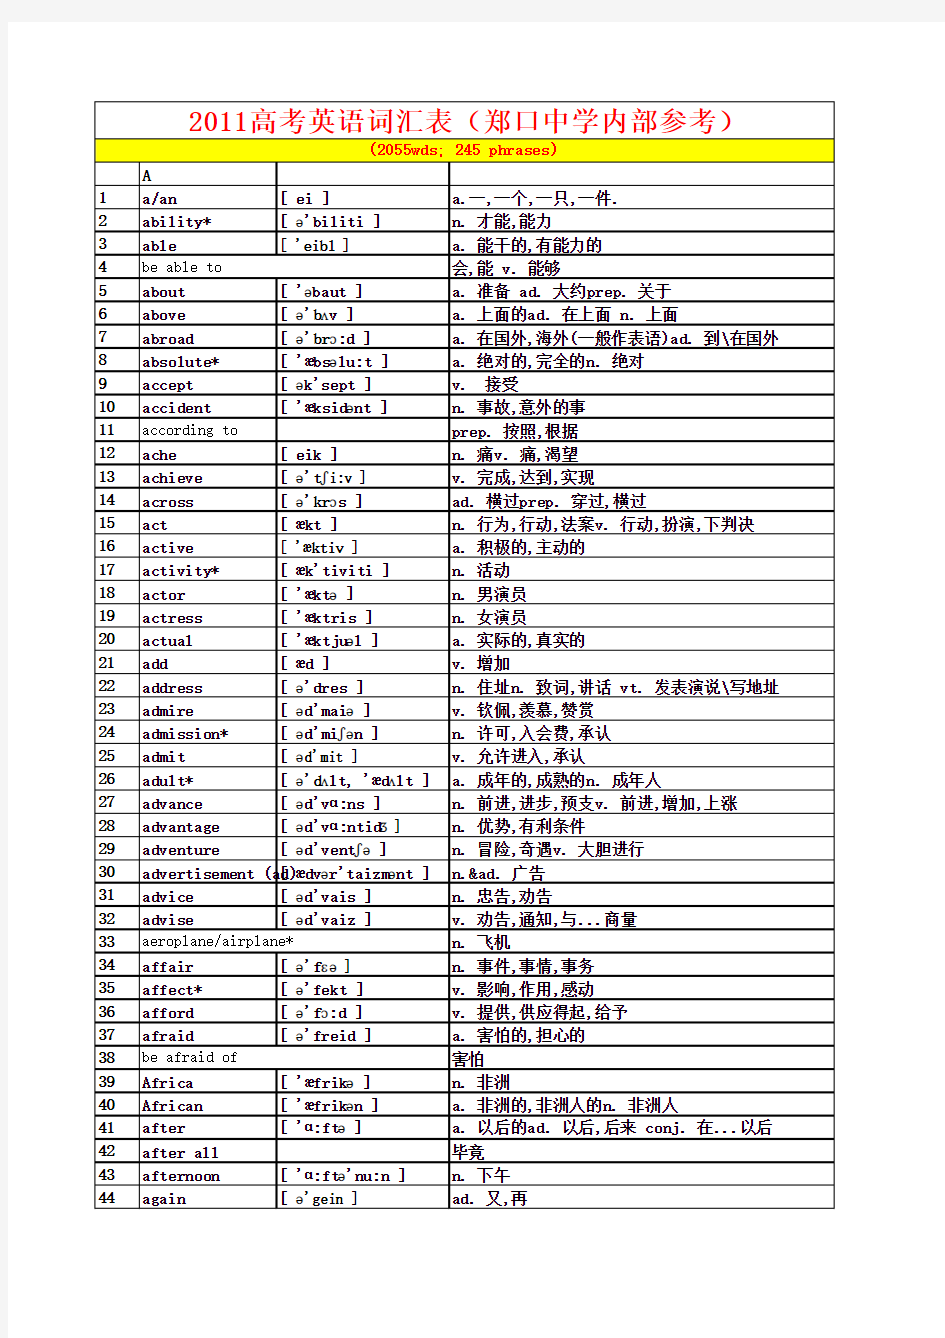 2011高考英语词汇表(内部参考)